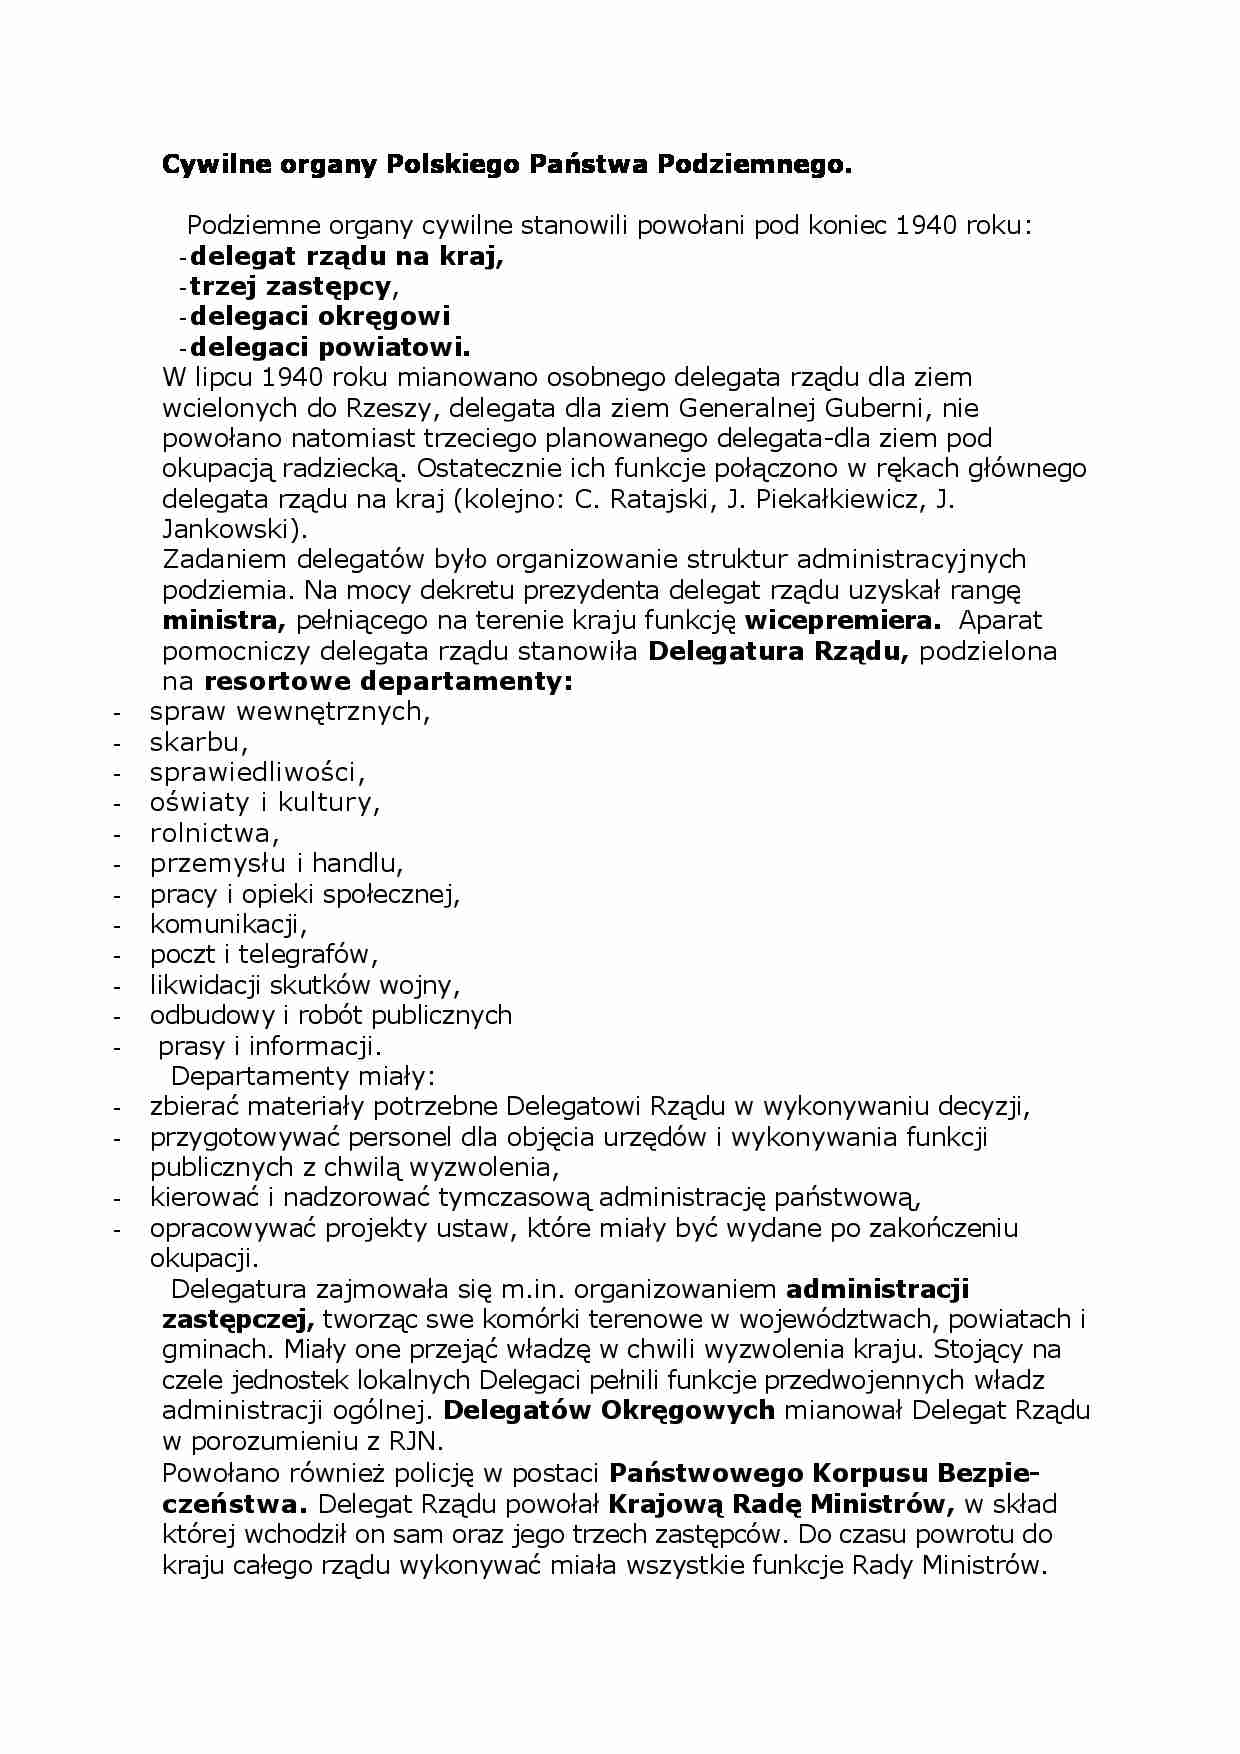 Cywilne organy Polskiego Państwa Podziemnego - strona 1